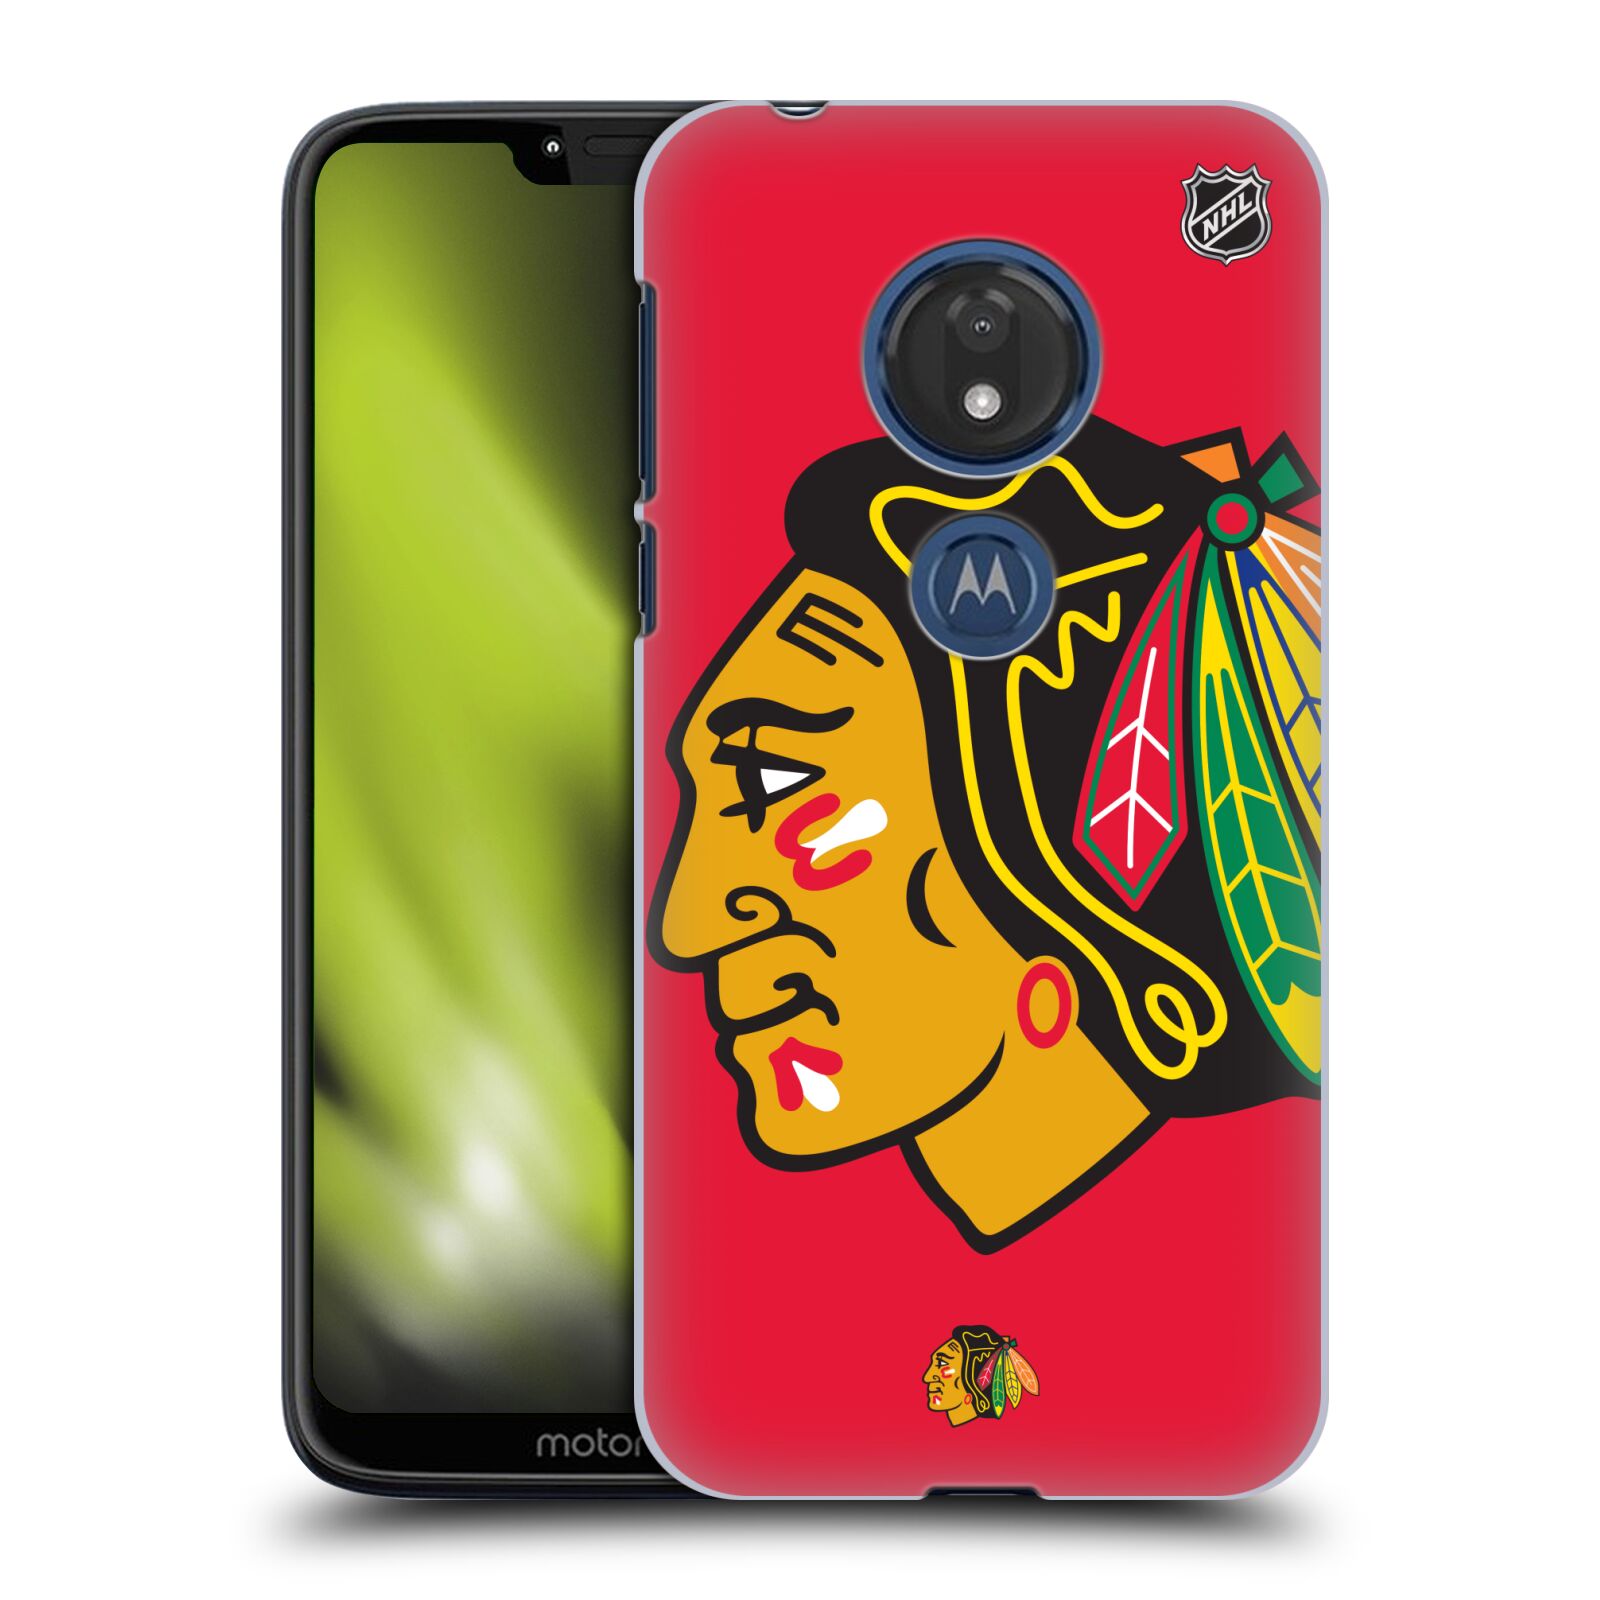 Pouzdro na mobil Motorola Moto G7 Play - HEAD CASE - Hokej NHL - Chicago Blackhawks - Velký znak